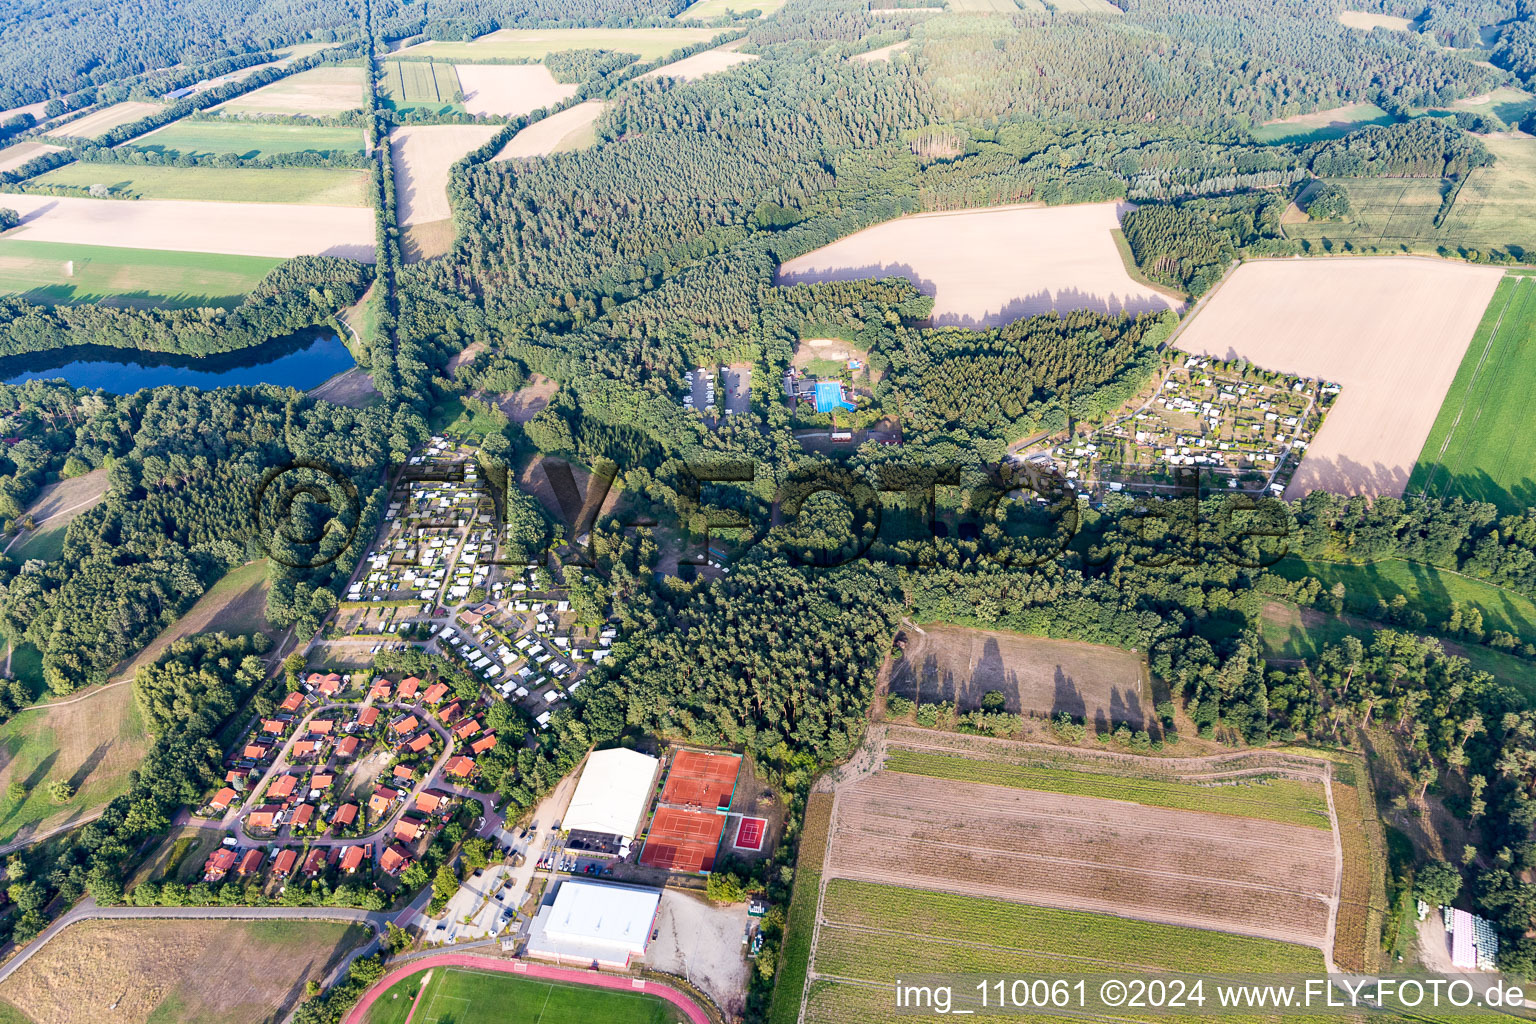 Vue aérienne de Vue des rues et des maisons des quartiers résidentiels à Amelinghausen dans le département Basse-Saxe, Allemagne